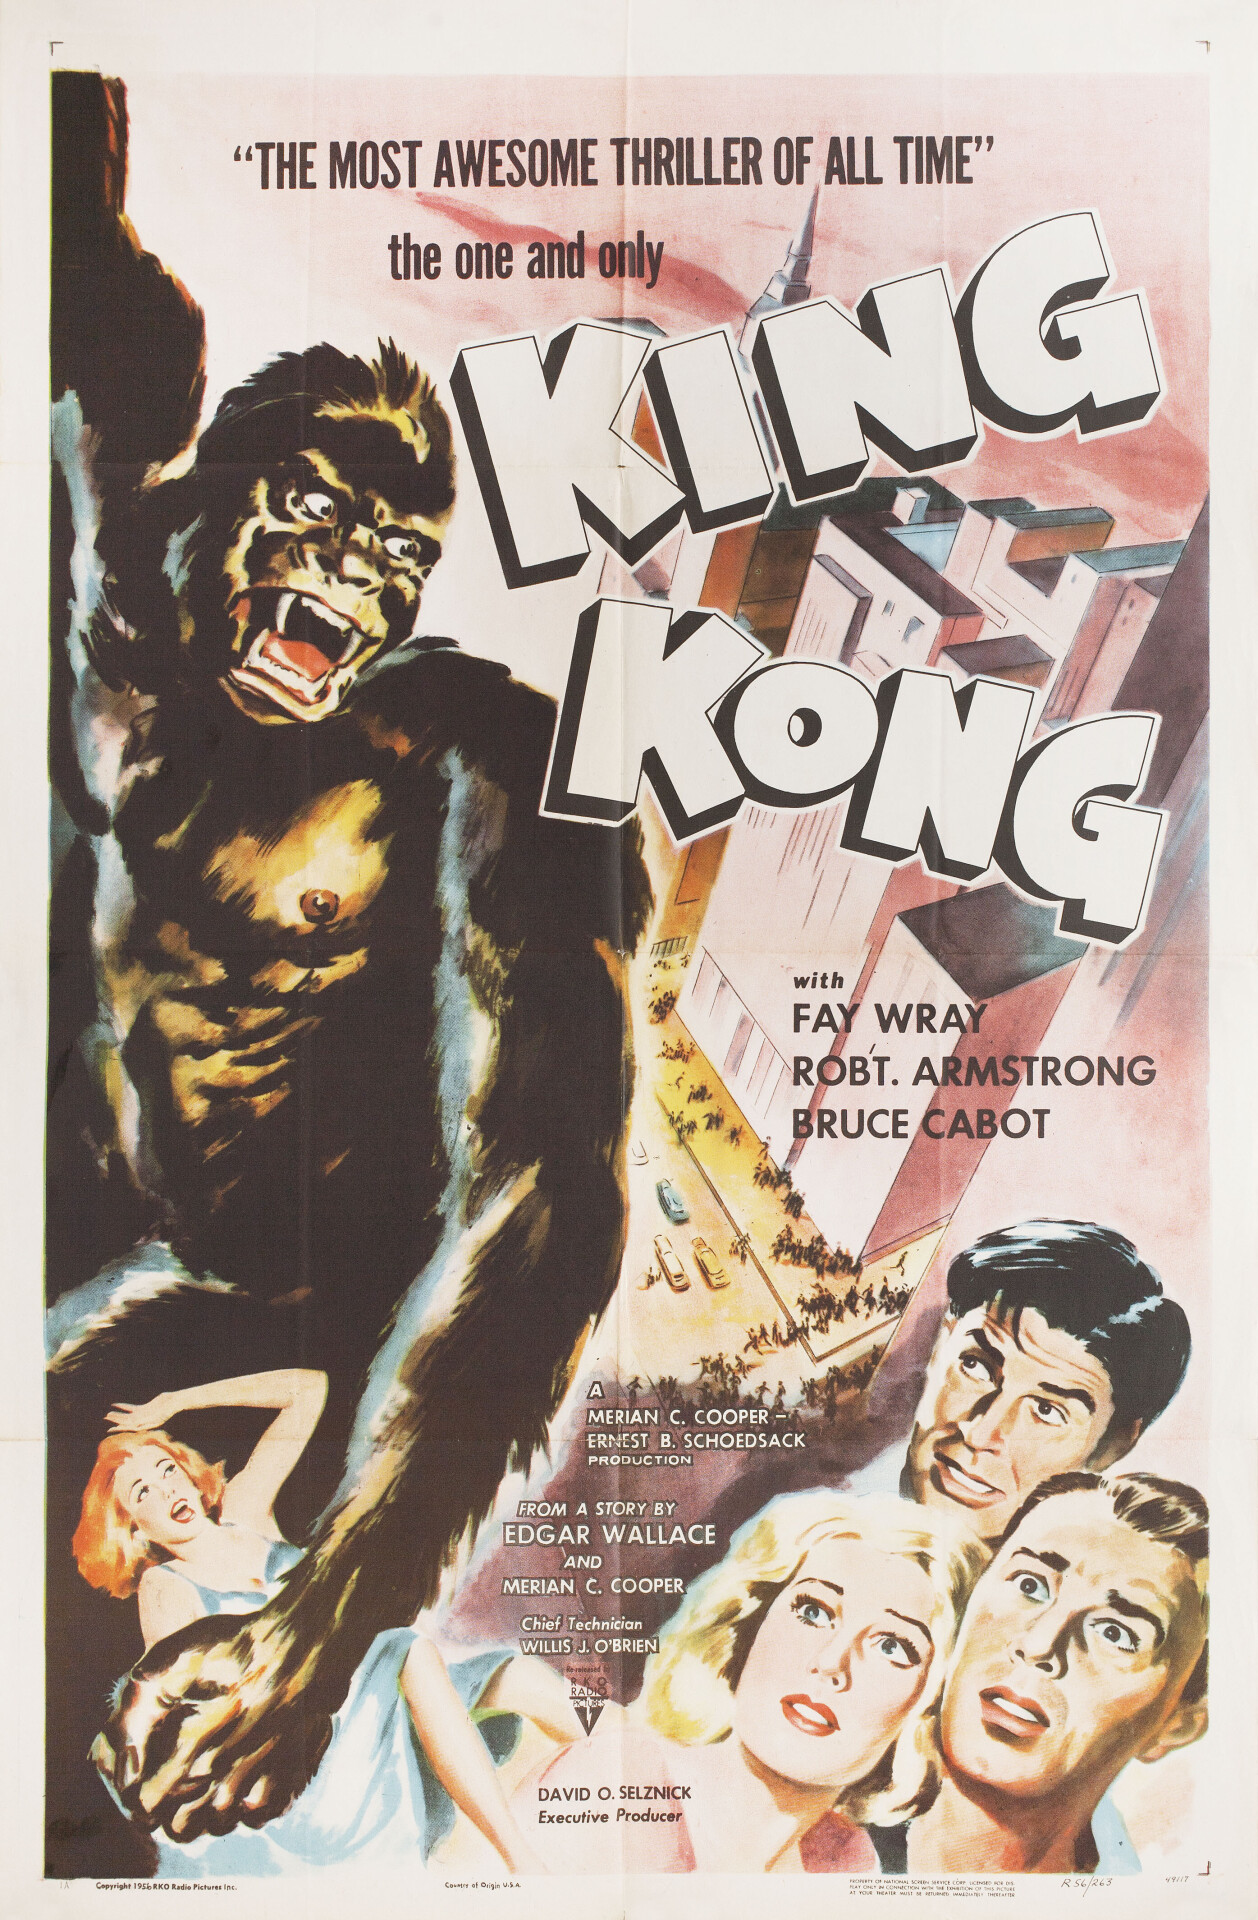 Кинг Конг (King Kong, 1933), режиссёр Мериан К. Купер, американский постер к фильму (ужасы, 1956 год)